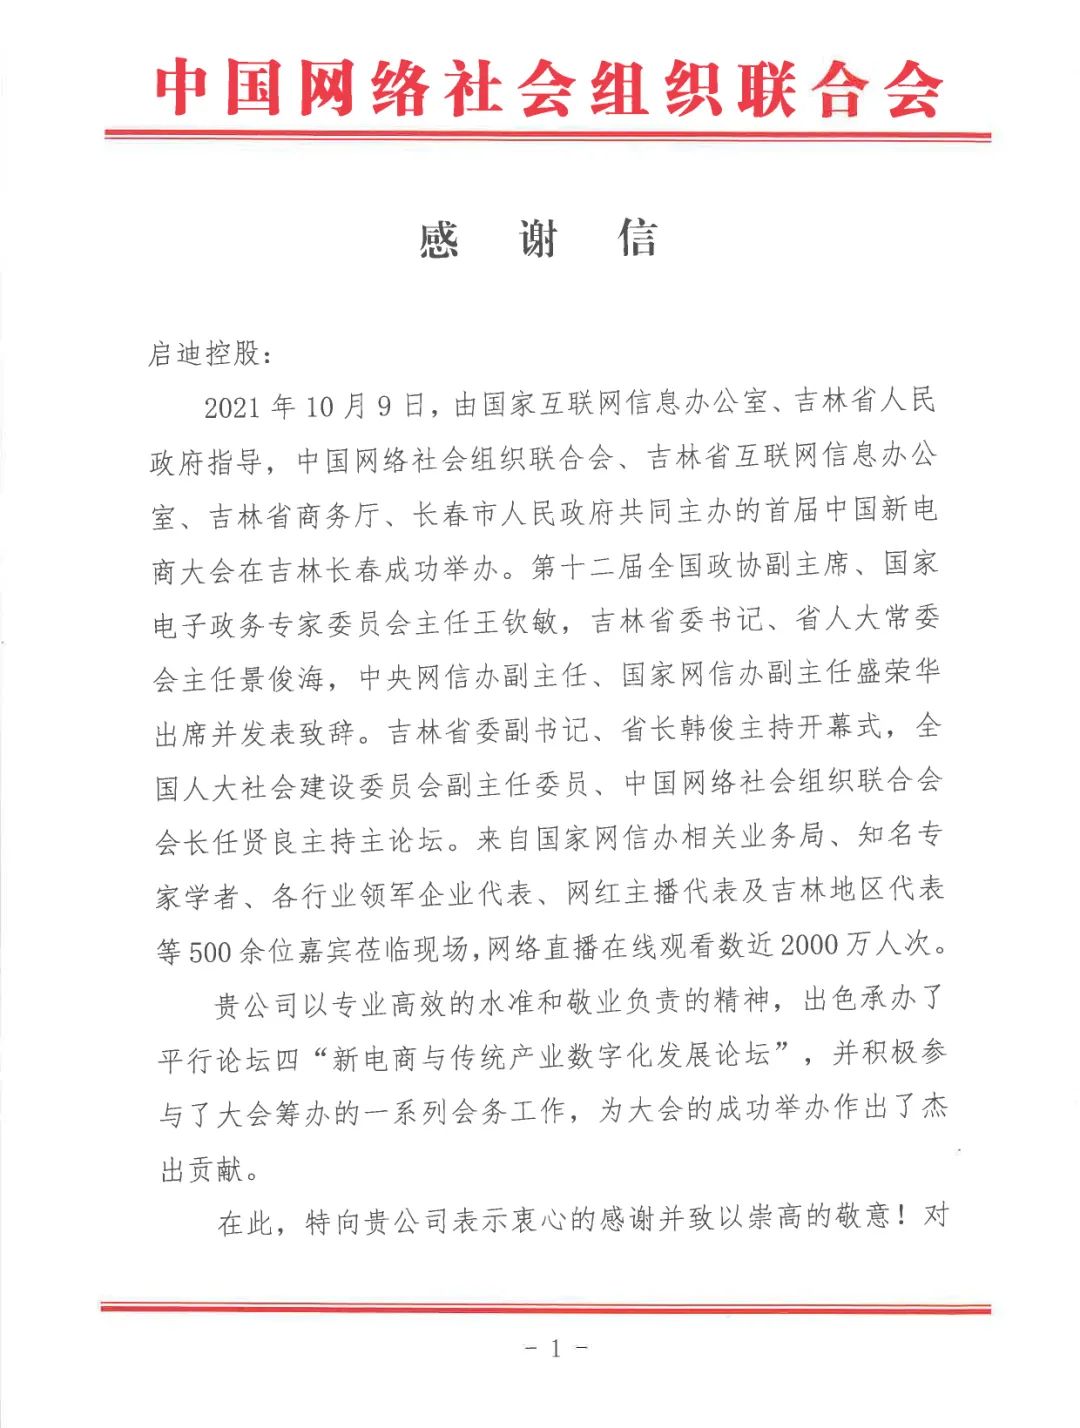 中国网络社会组织联合会向启迪控股致感谢信！